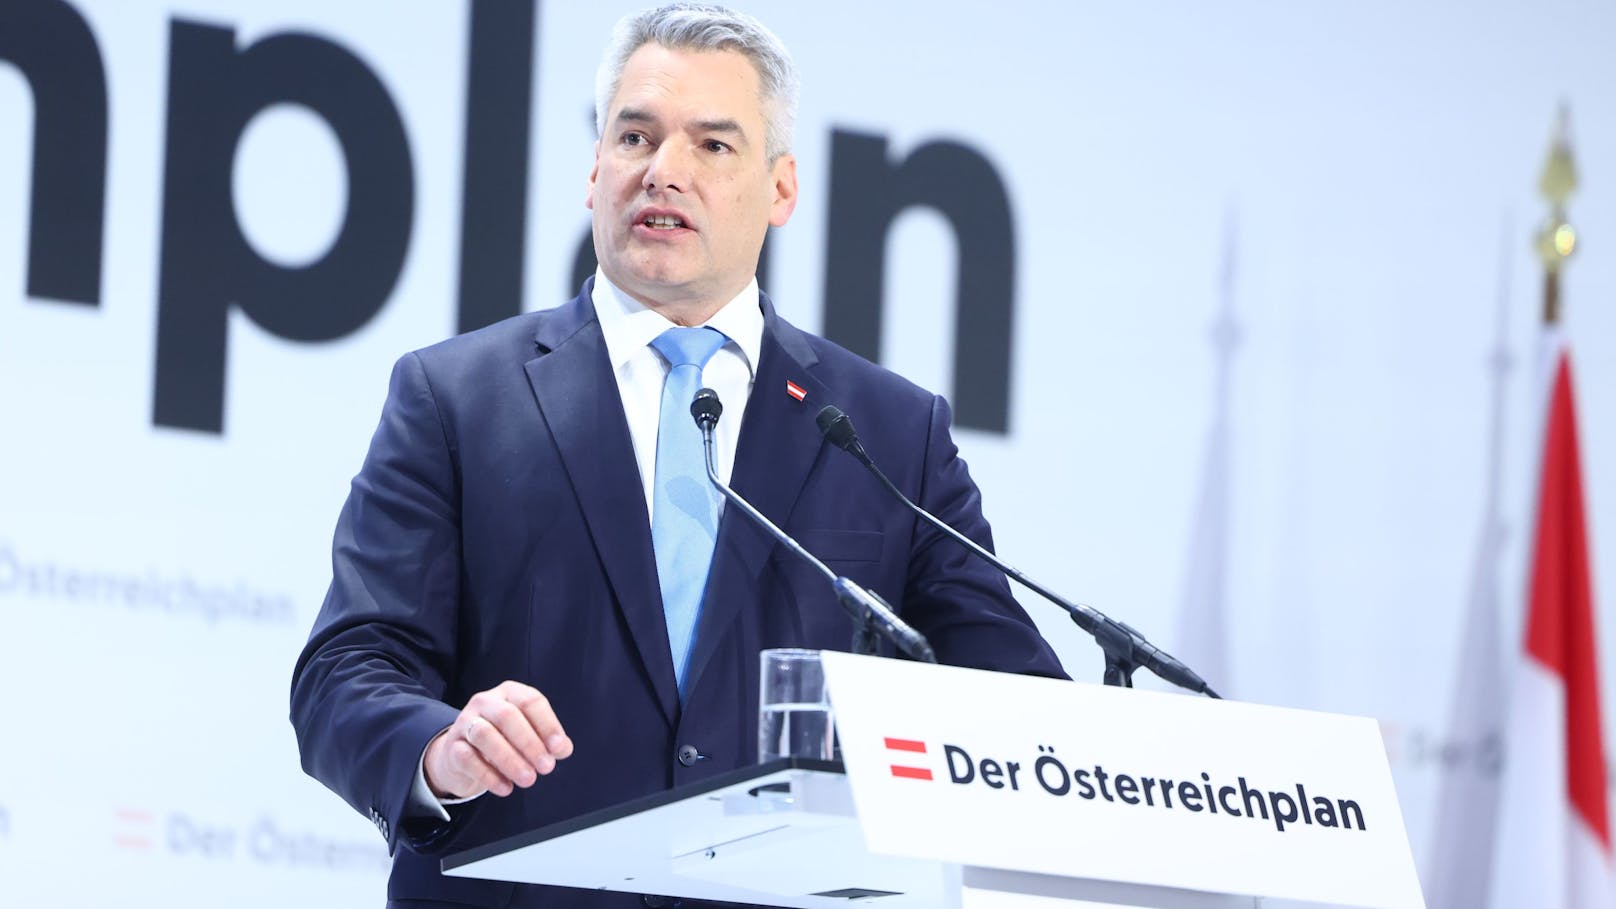 "Harte Arbeit": Kanzler macht Geldansage für Österreich